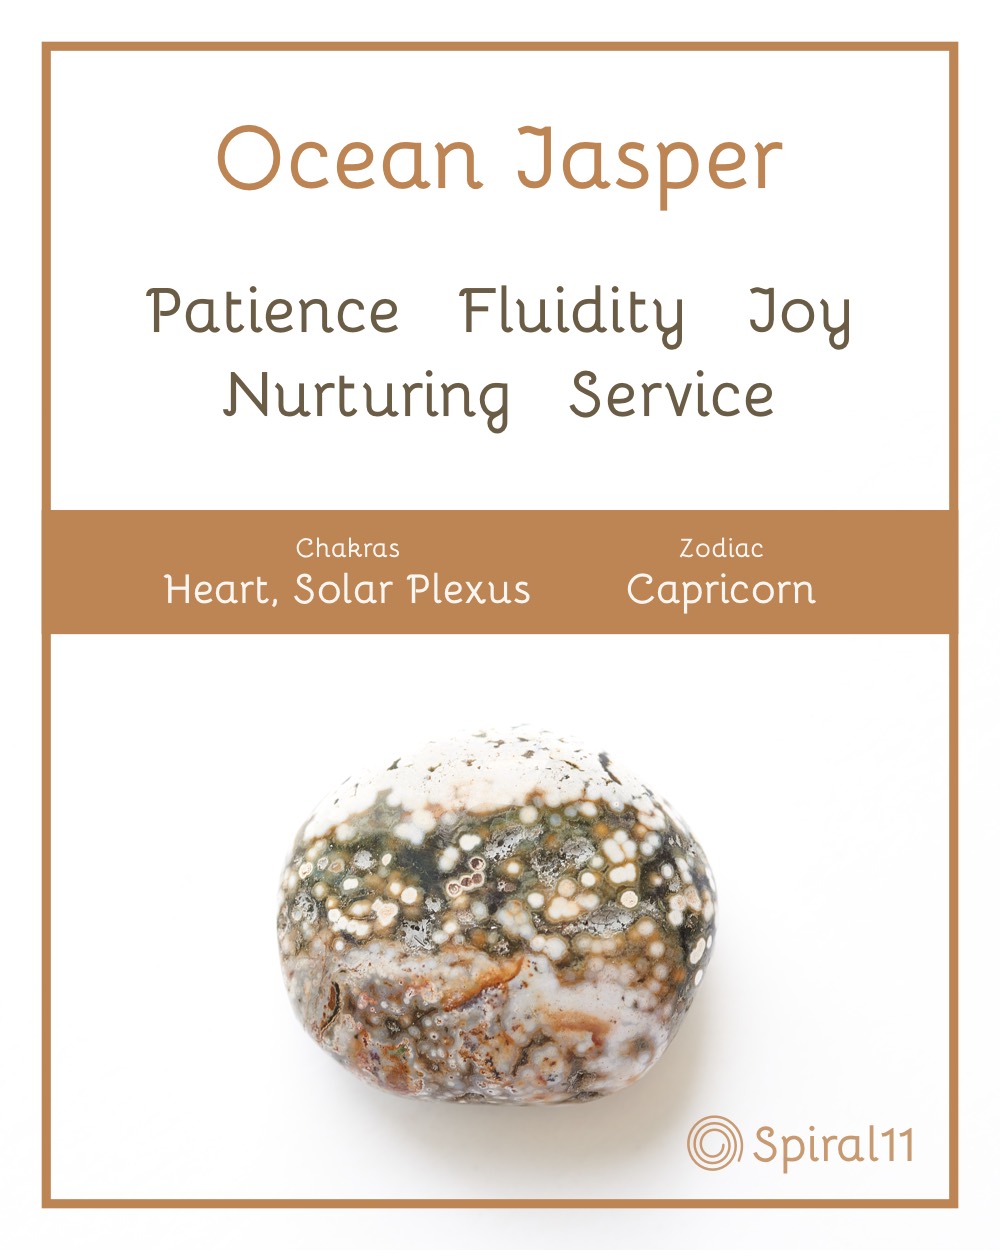 Ocean jasper benefits